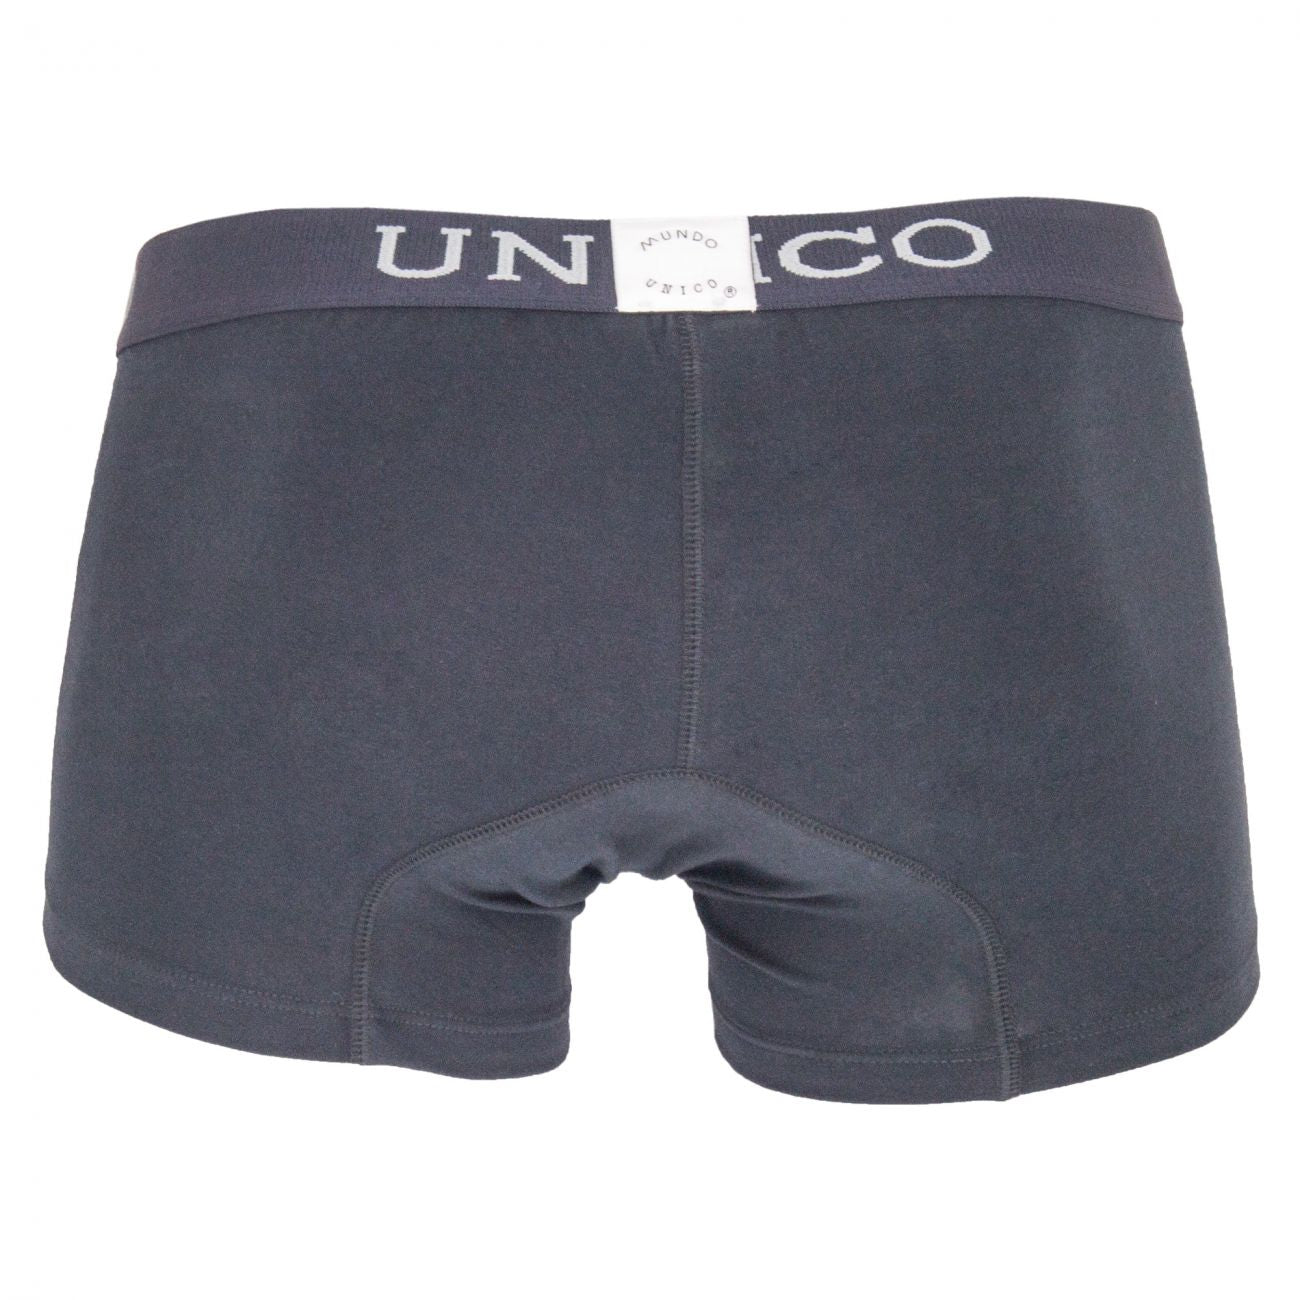 Unico (9612010010596) Boxer Briefs Asfalto Cotton